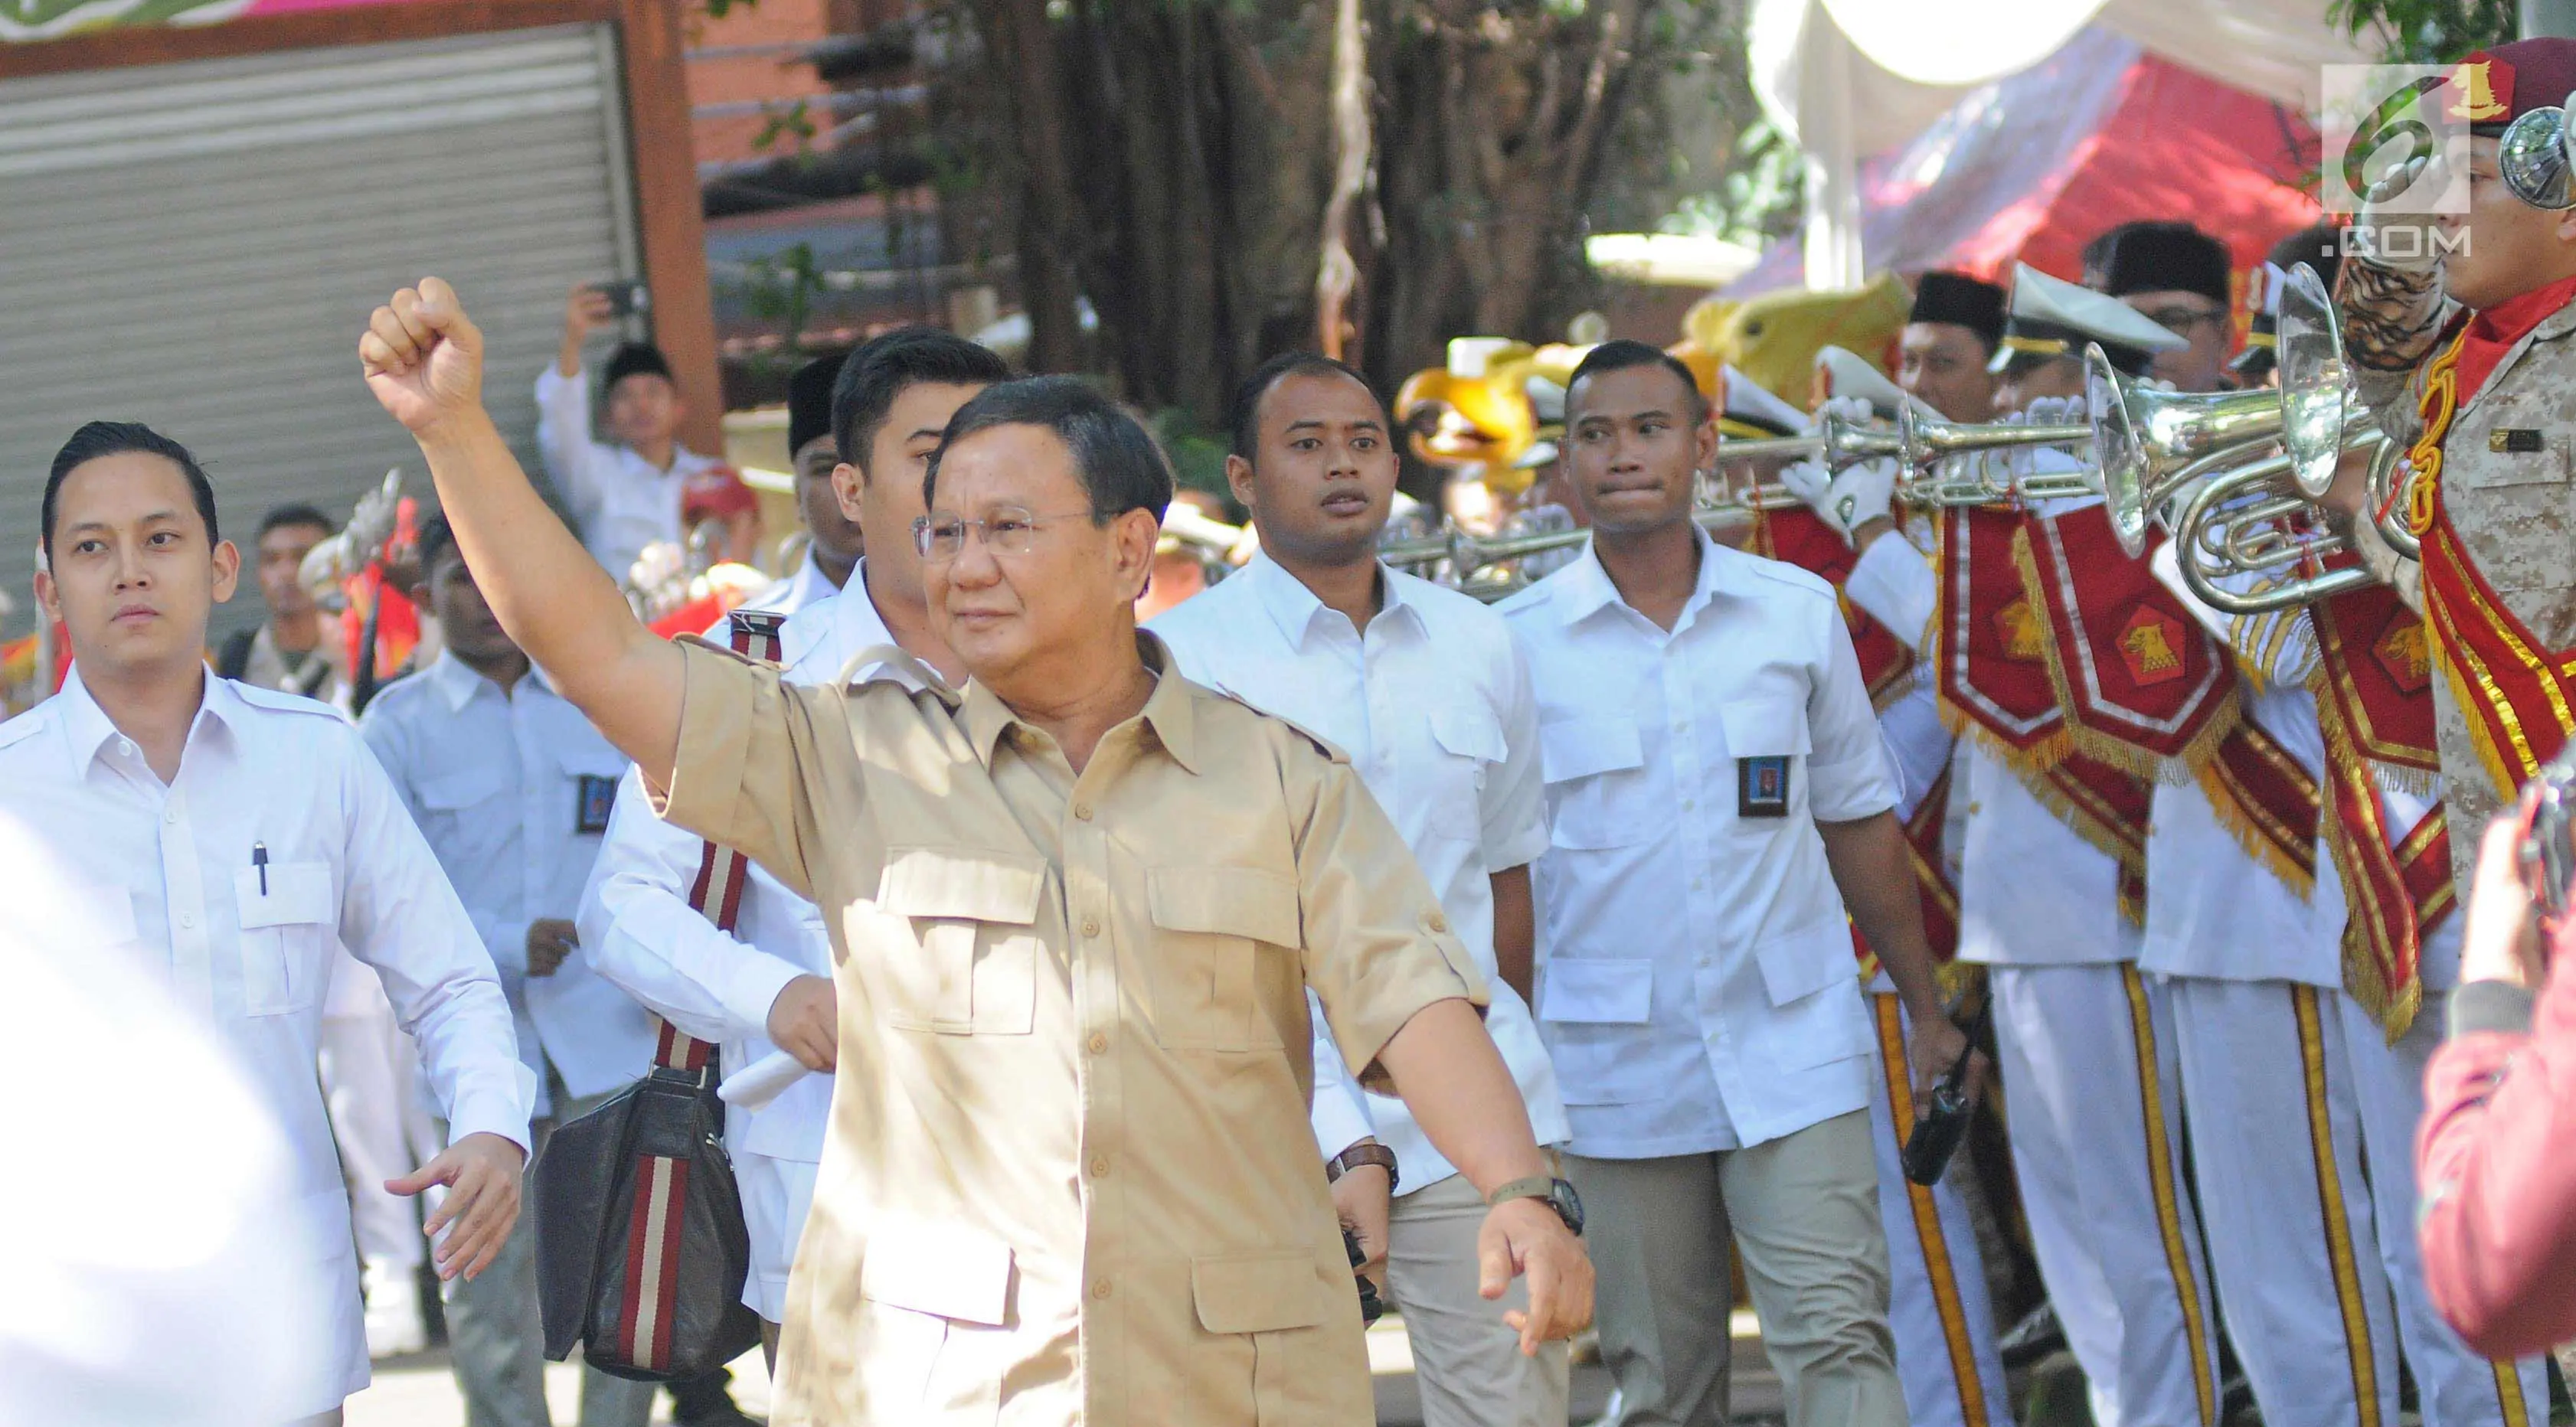 Ketua Dewan Pembina Partai Gerakan Indonesia Raya (Gerindra), Prabowo Subianto saa menghadiri acara Hari Ulang Tahun ke-10 Tahun yang digelar di kantor Dewan Pimpinan Pusat (DPP) Partai Gerindra, Jakarta, Sabtu (10/2). (Liputan6.com/Herman Zakharia)